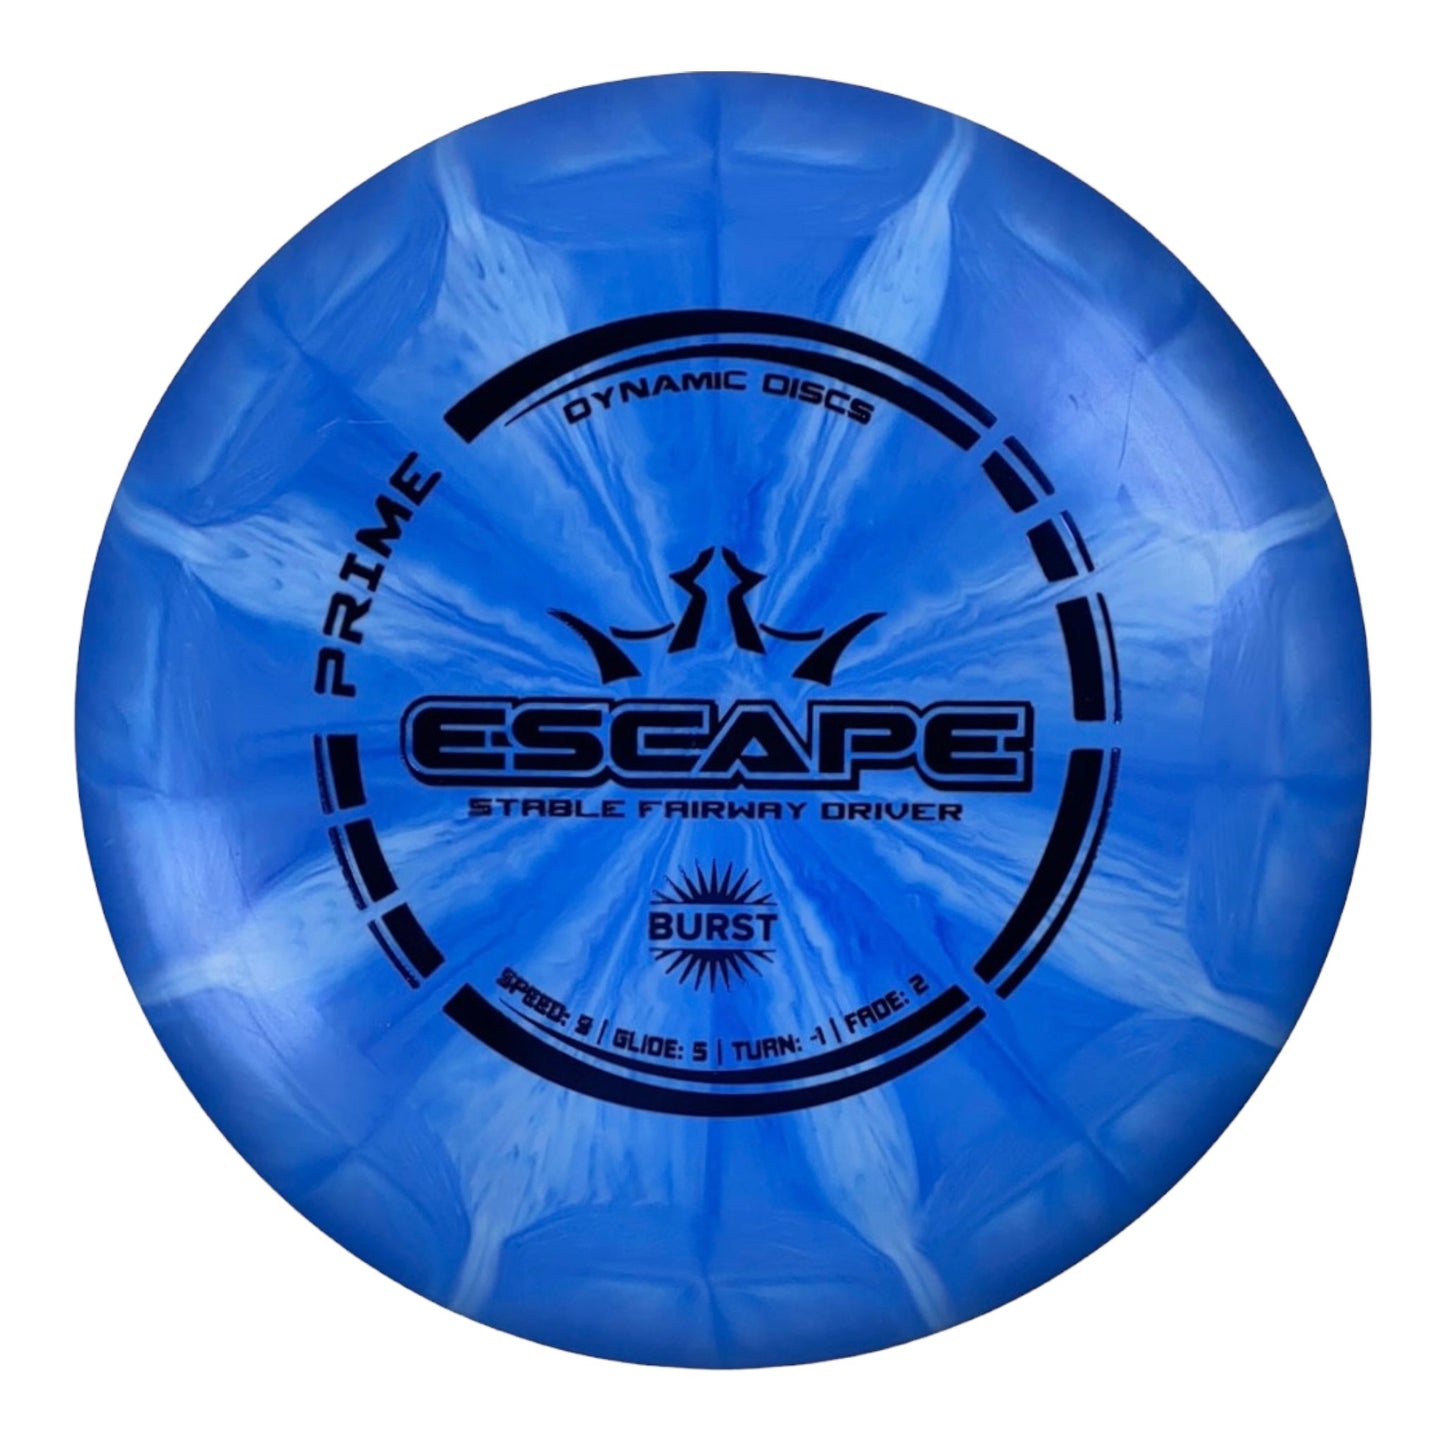 Dynamic Discs Escape | Prime Burst | Blue/Blue 173g Disc Golf